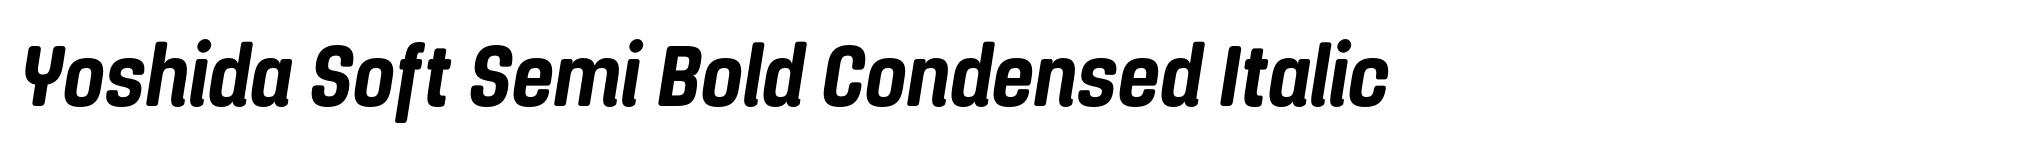 Yoshida Soft Semi Bold Condensed Italic image